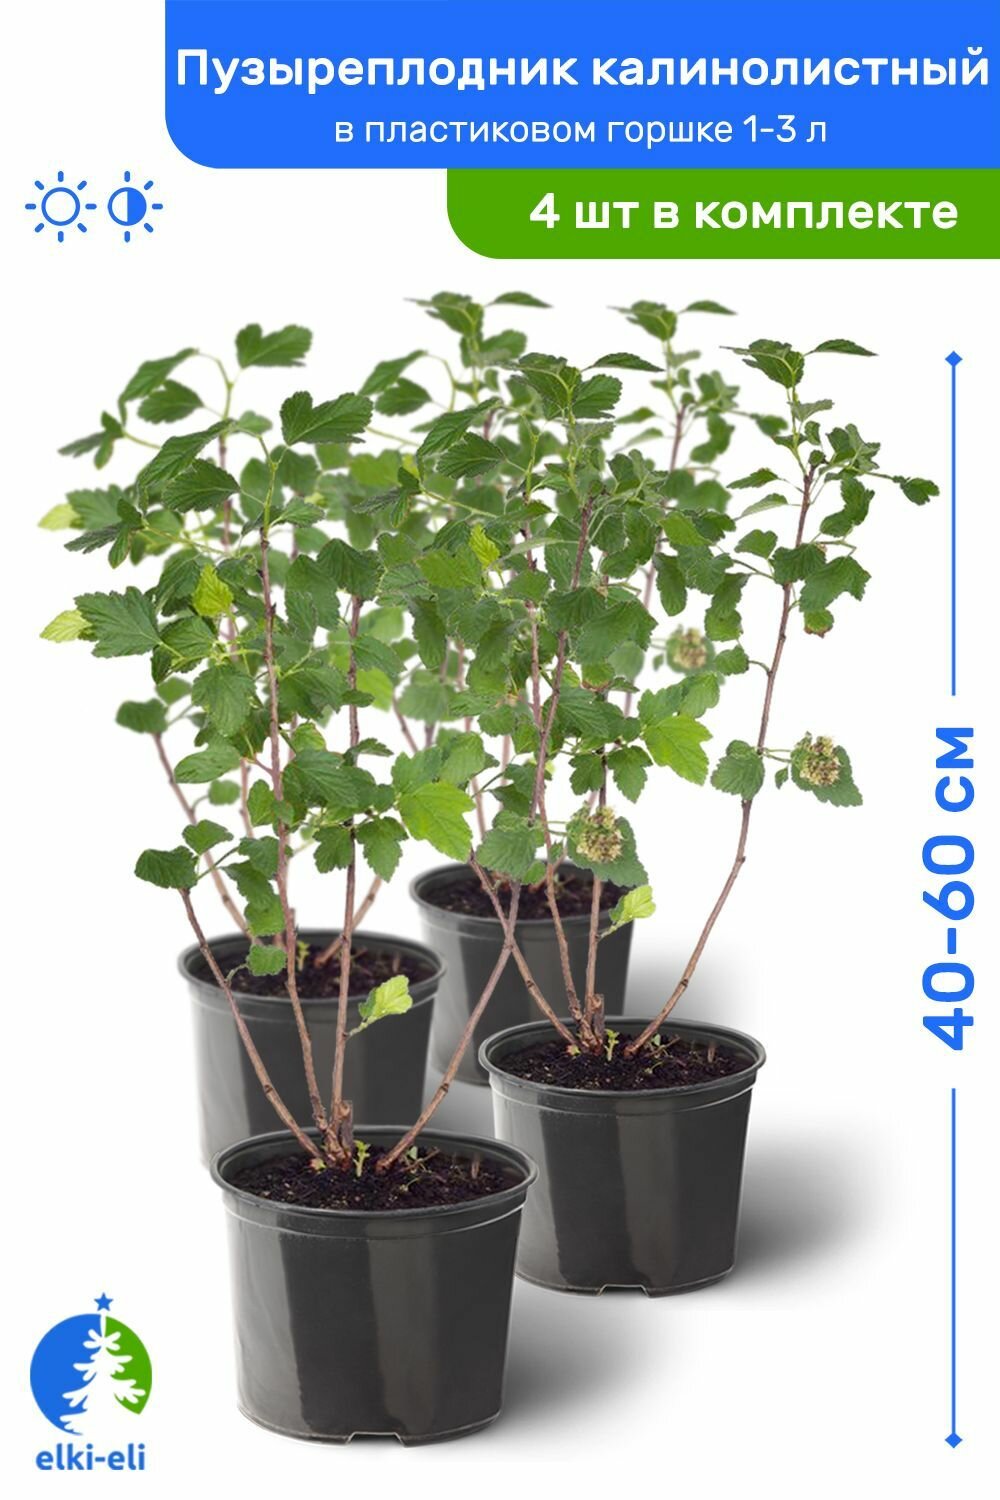 Пузыреплодник калинолистный 60-80 см в пластиковом горшке 1-3 л саженец лиственное живое растение комплект из 4 шт